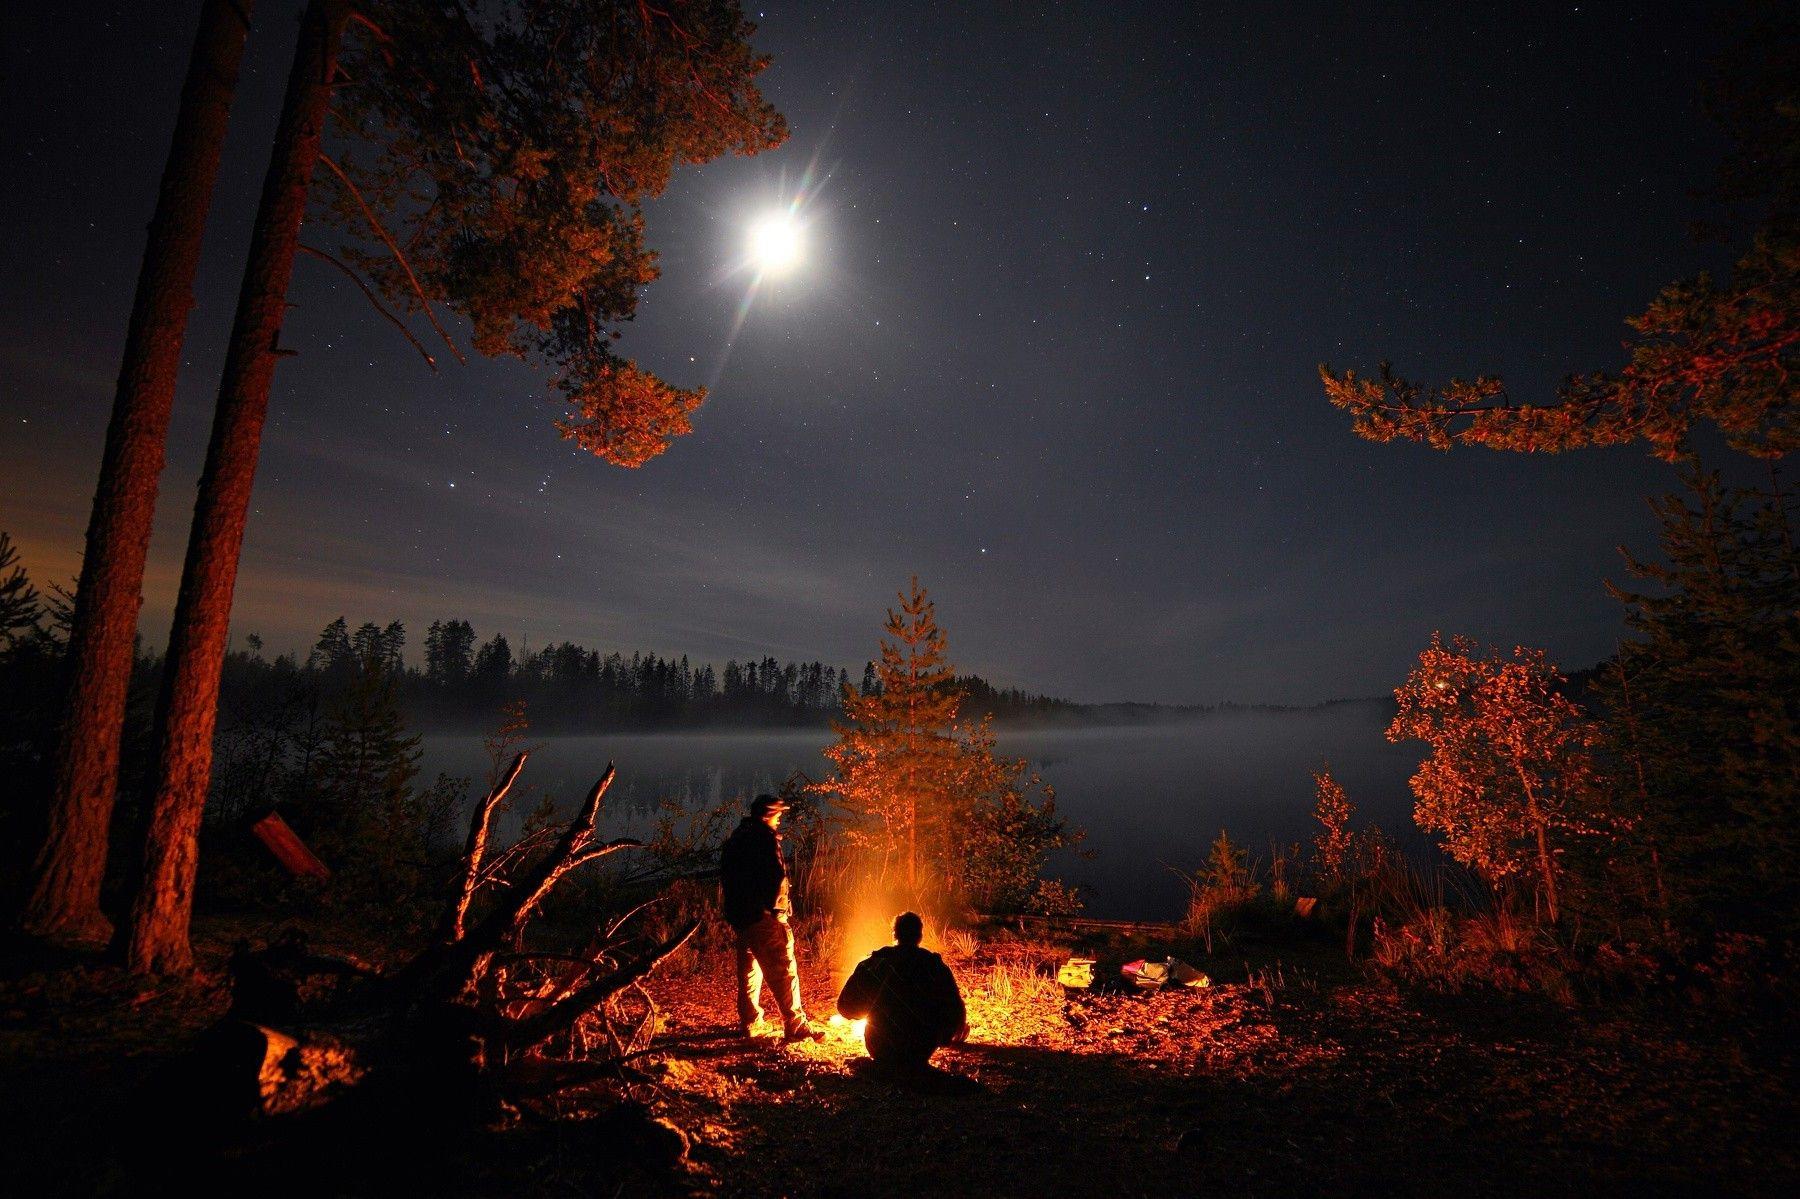 عکس زیبا از بهترین مکان کمپ کنار دریاچه از جوهره 